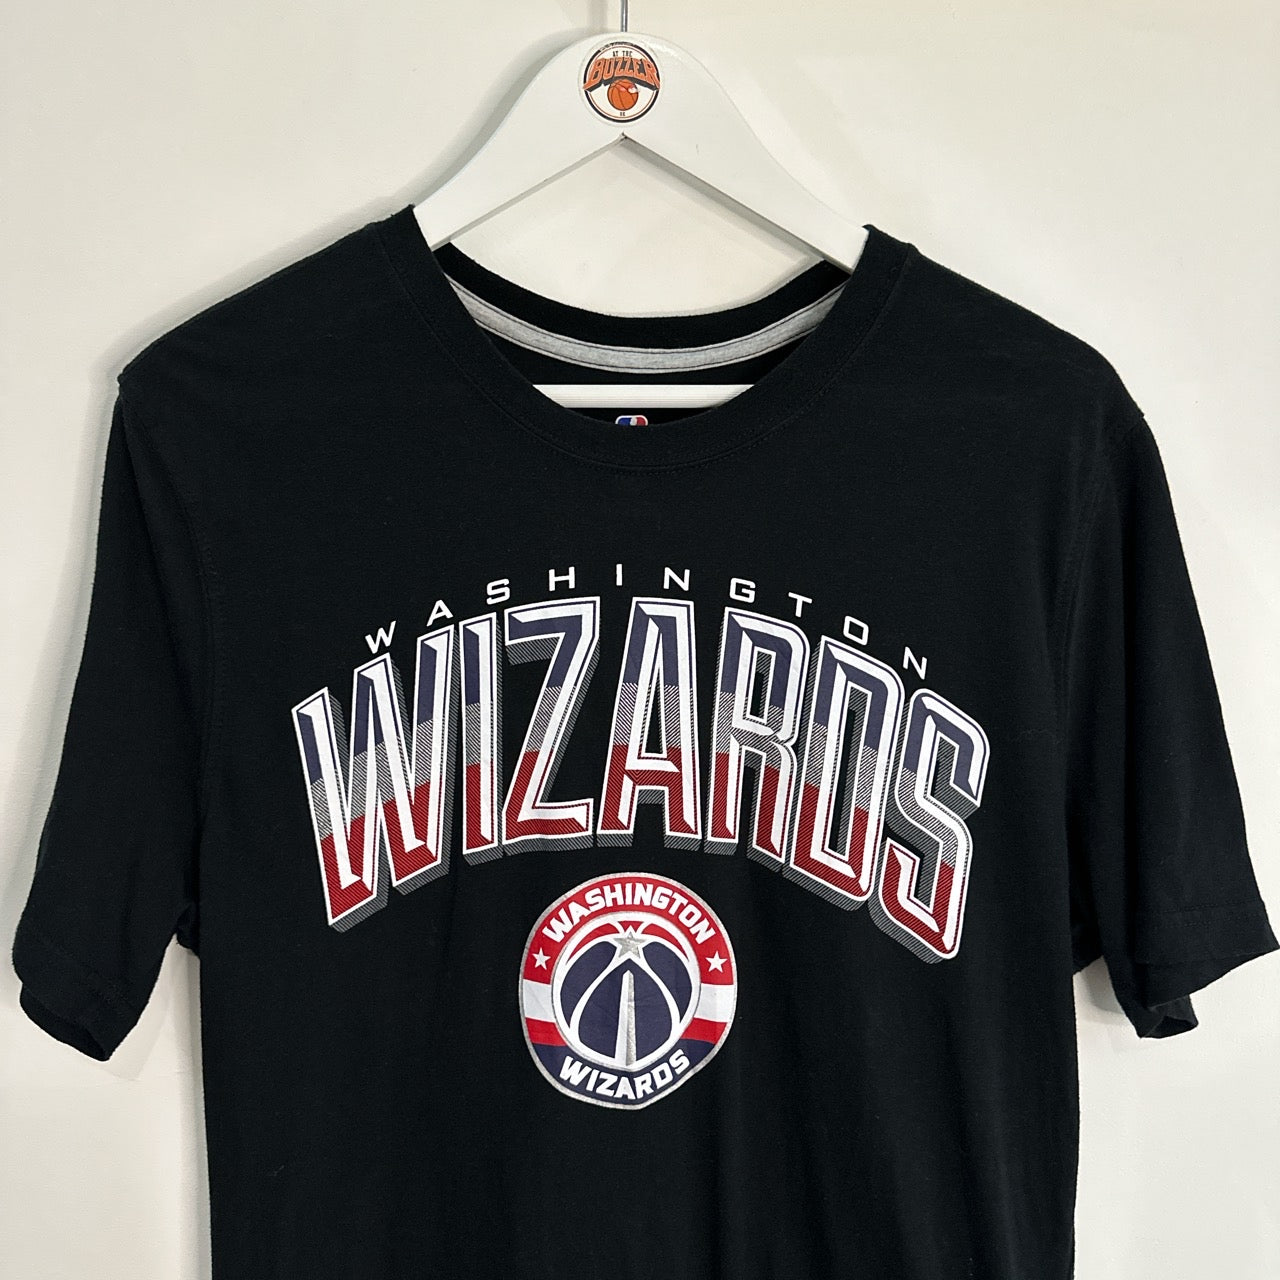 Washington Wizards T shirt - Large